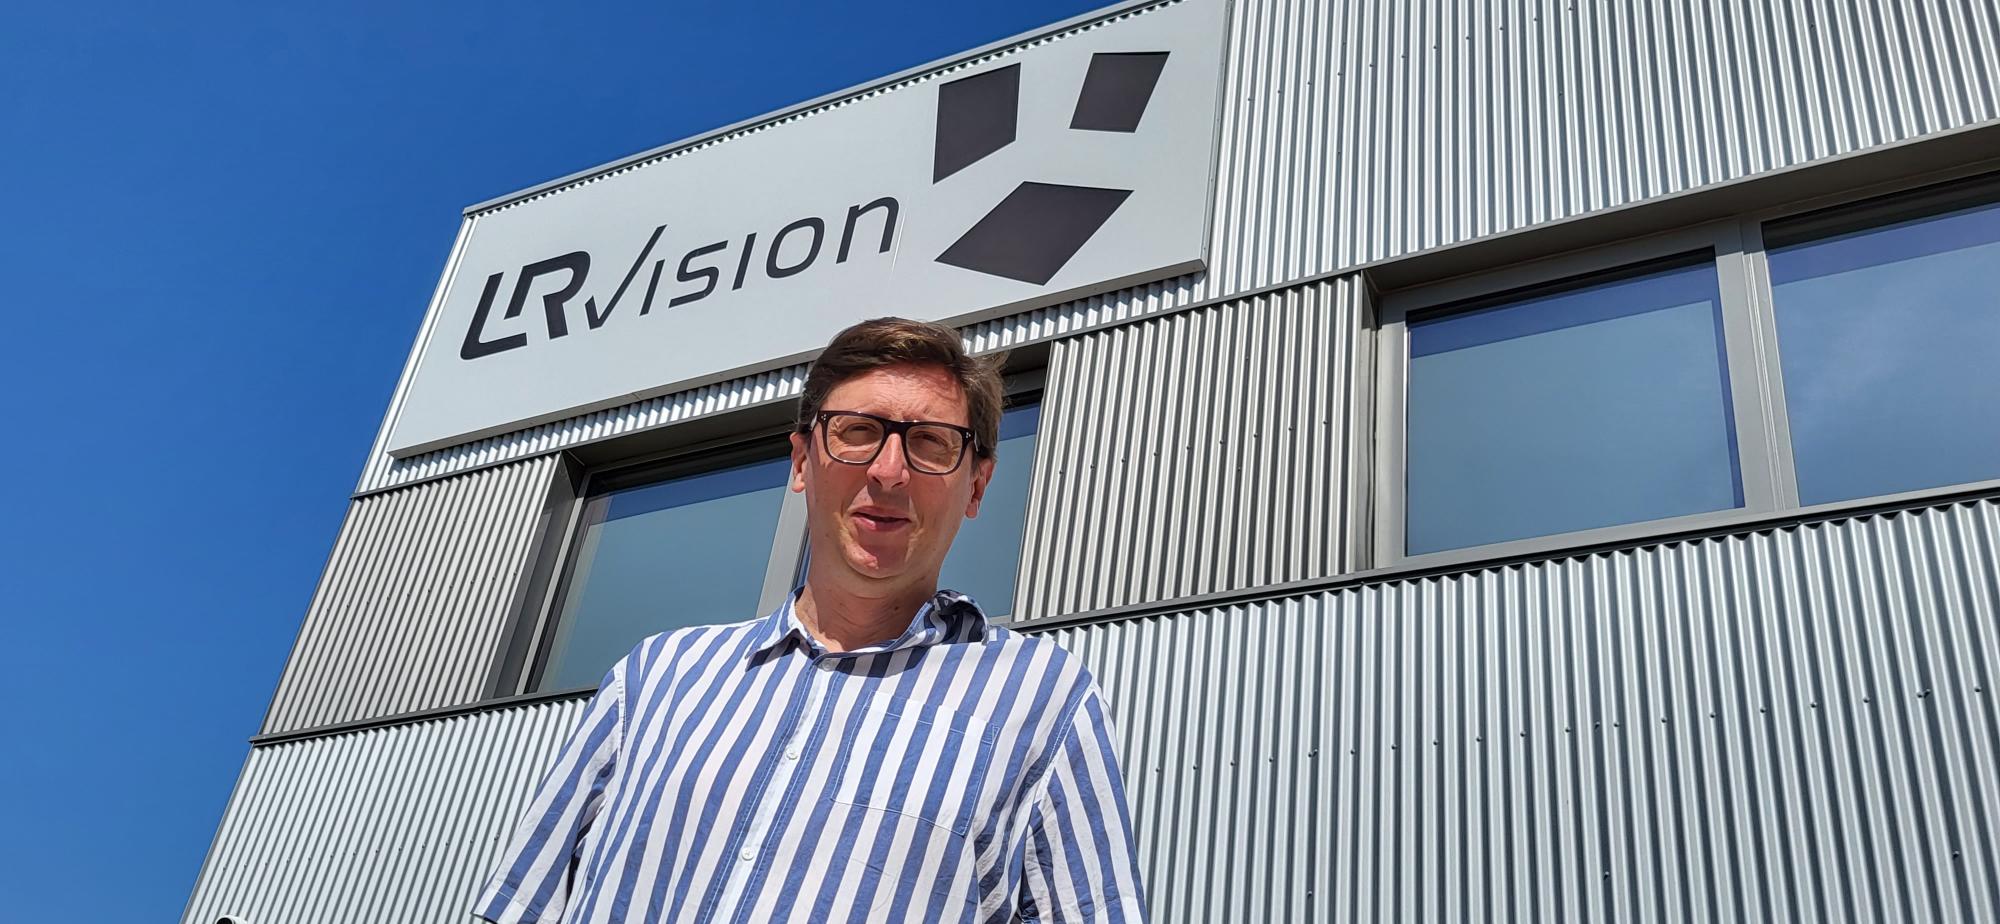 Guillaume Lemaire, co-fondateur de LRVision, a doublé sa surface d'exploitation et entend atteindre les 15 millions d'euros de chiffre d'affaires d'ici 5 ans. (Photo : Anthony Assémat - Entreprises Occitanie)